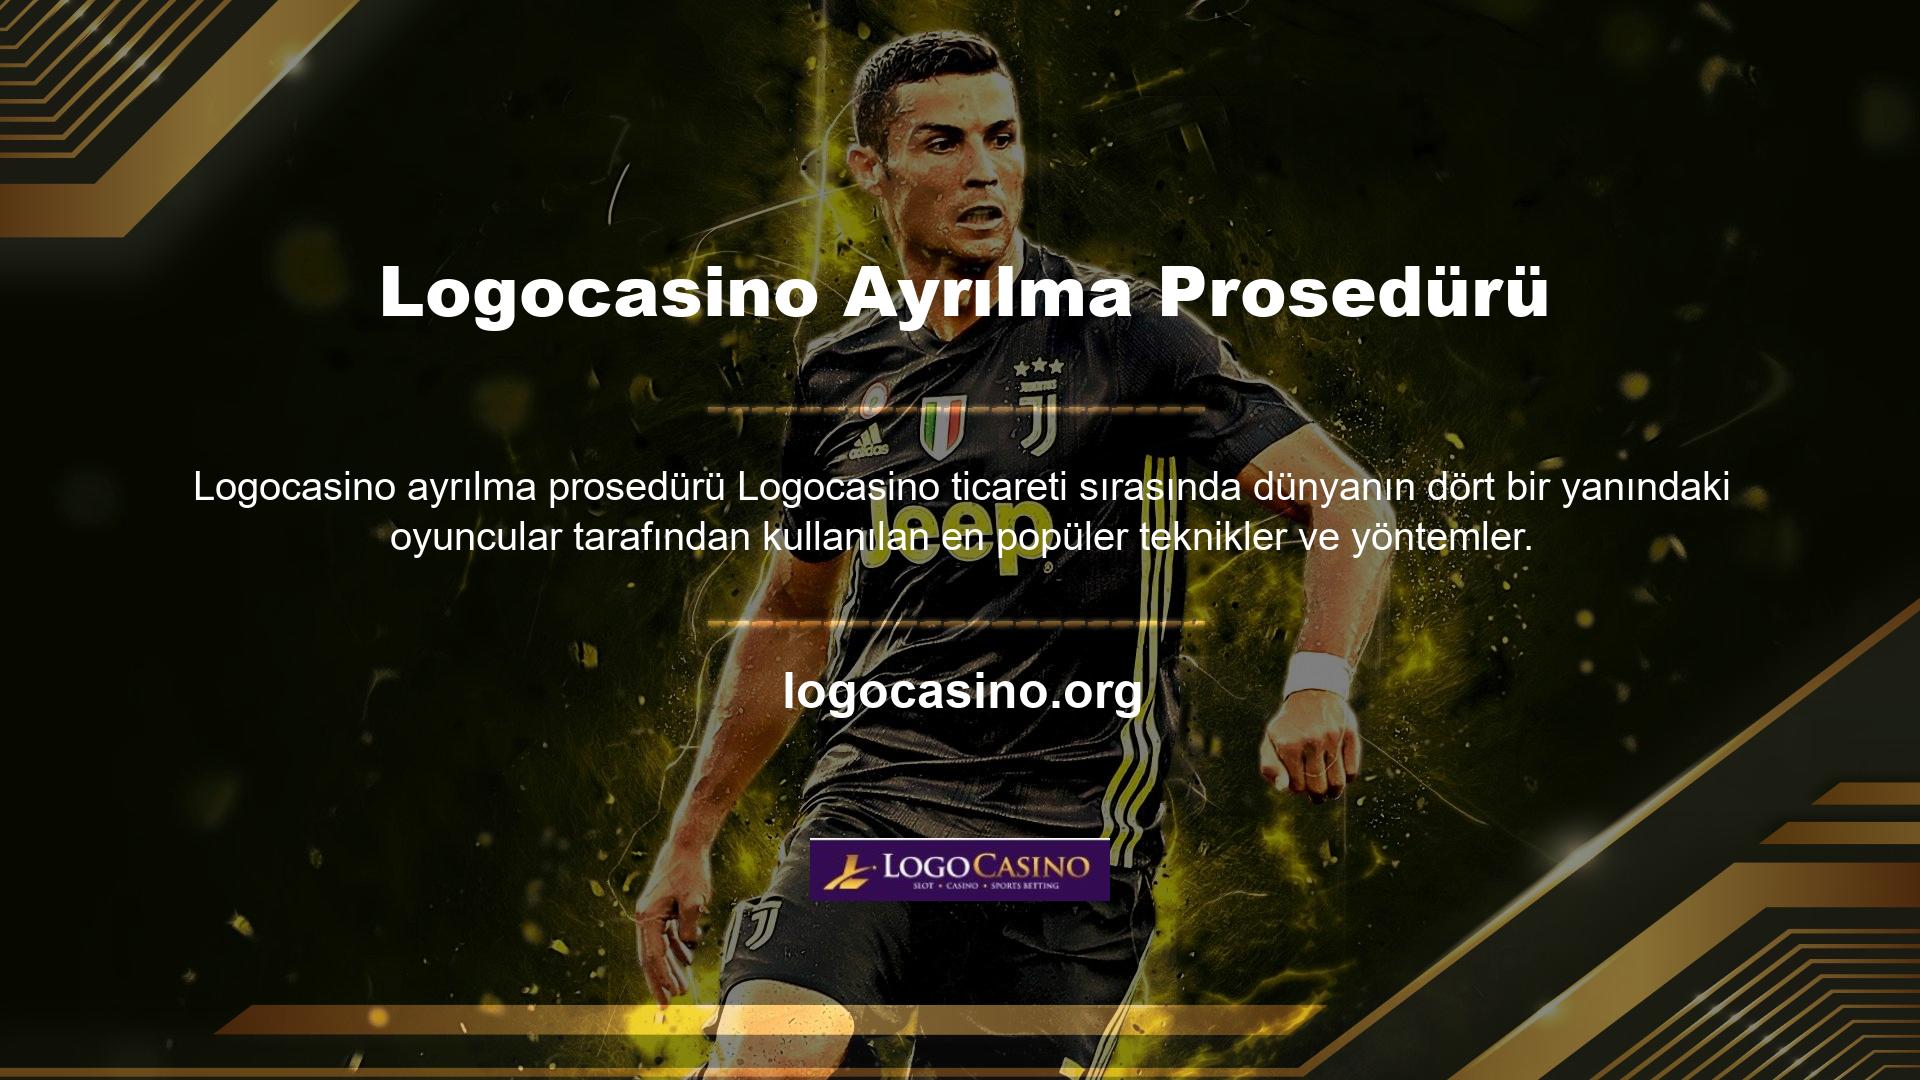 Logocasino, günümüzün en premium online casino oyunlarından biridir